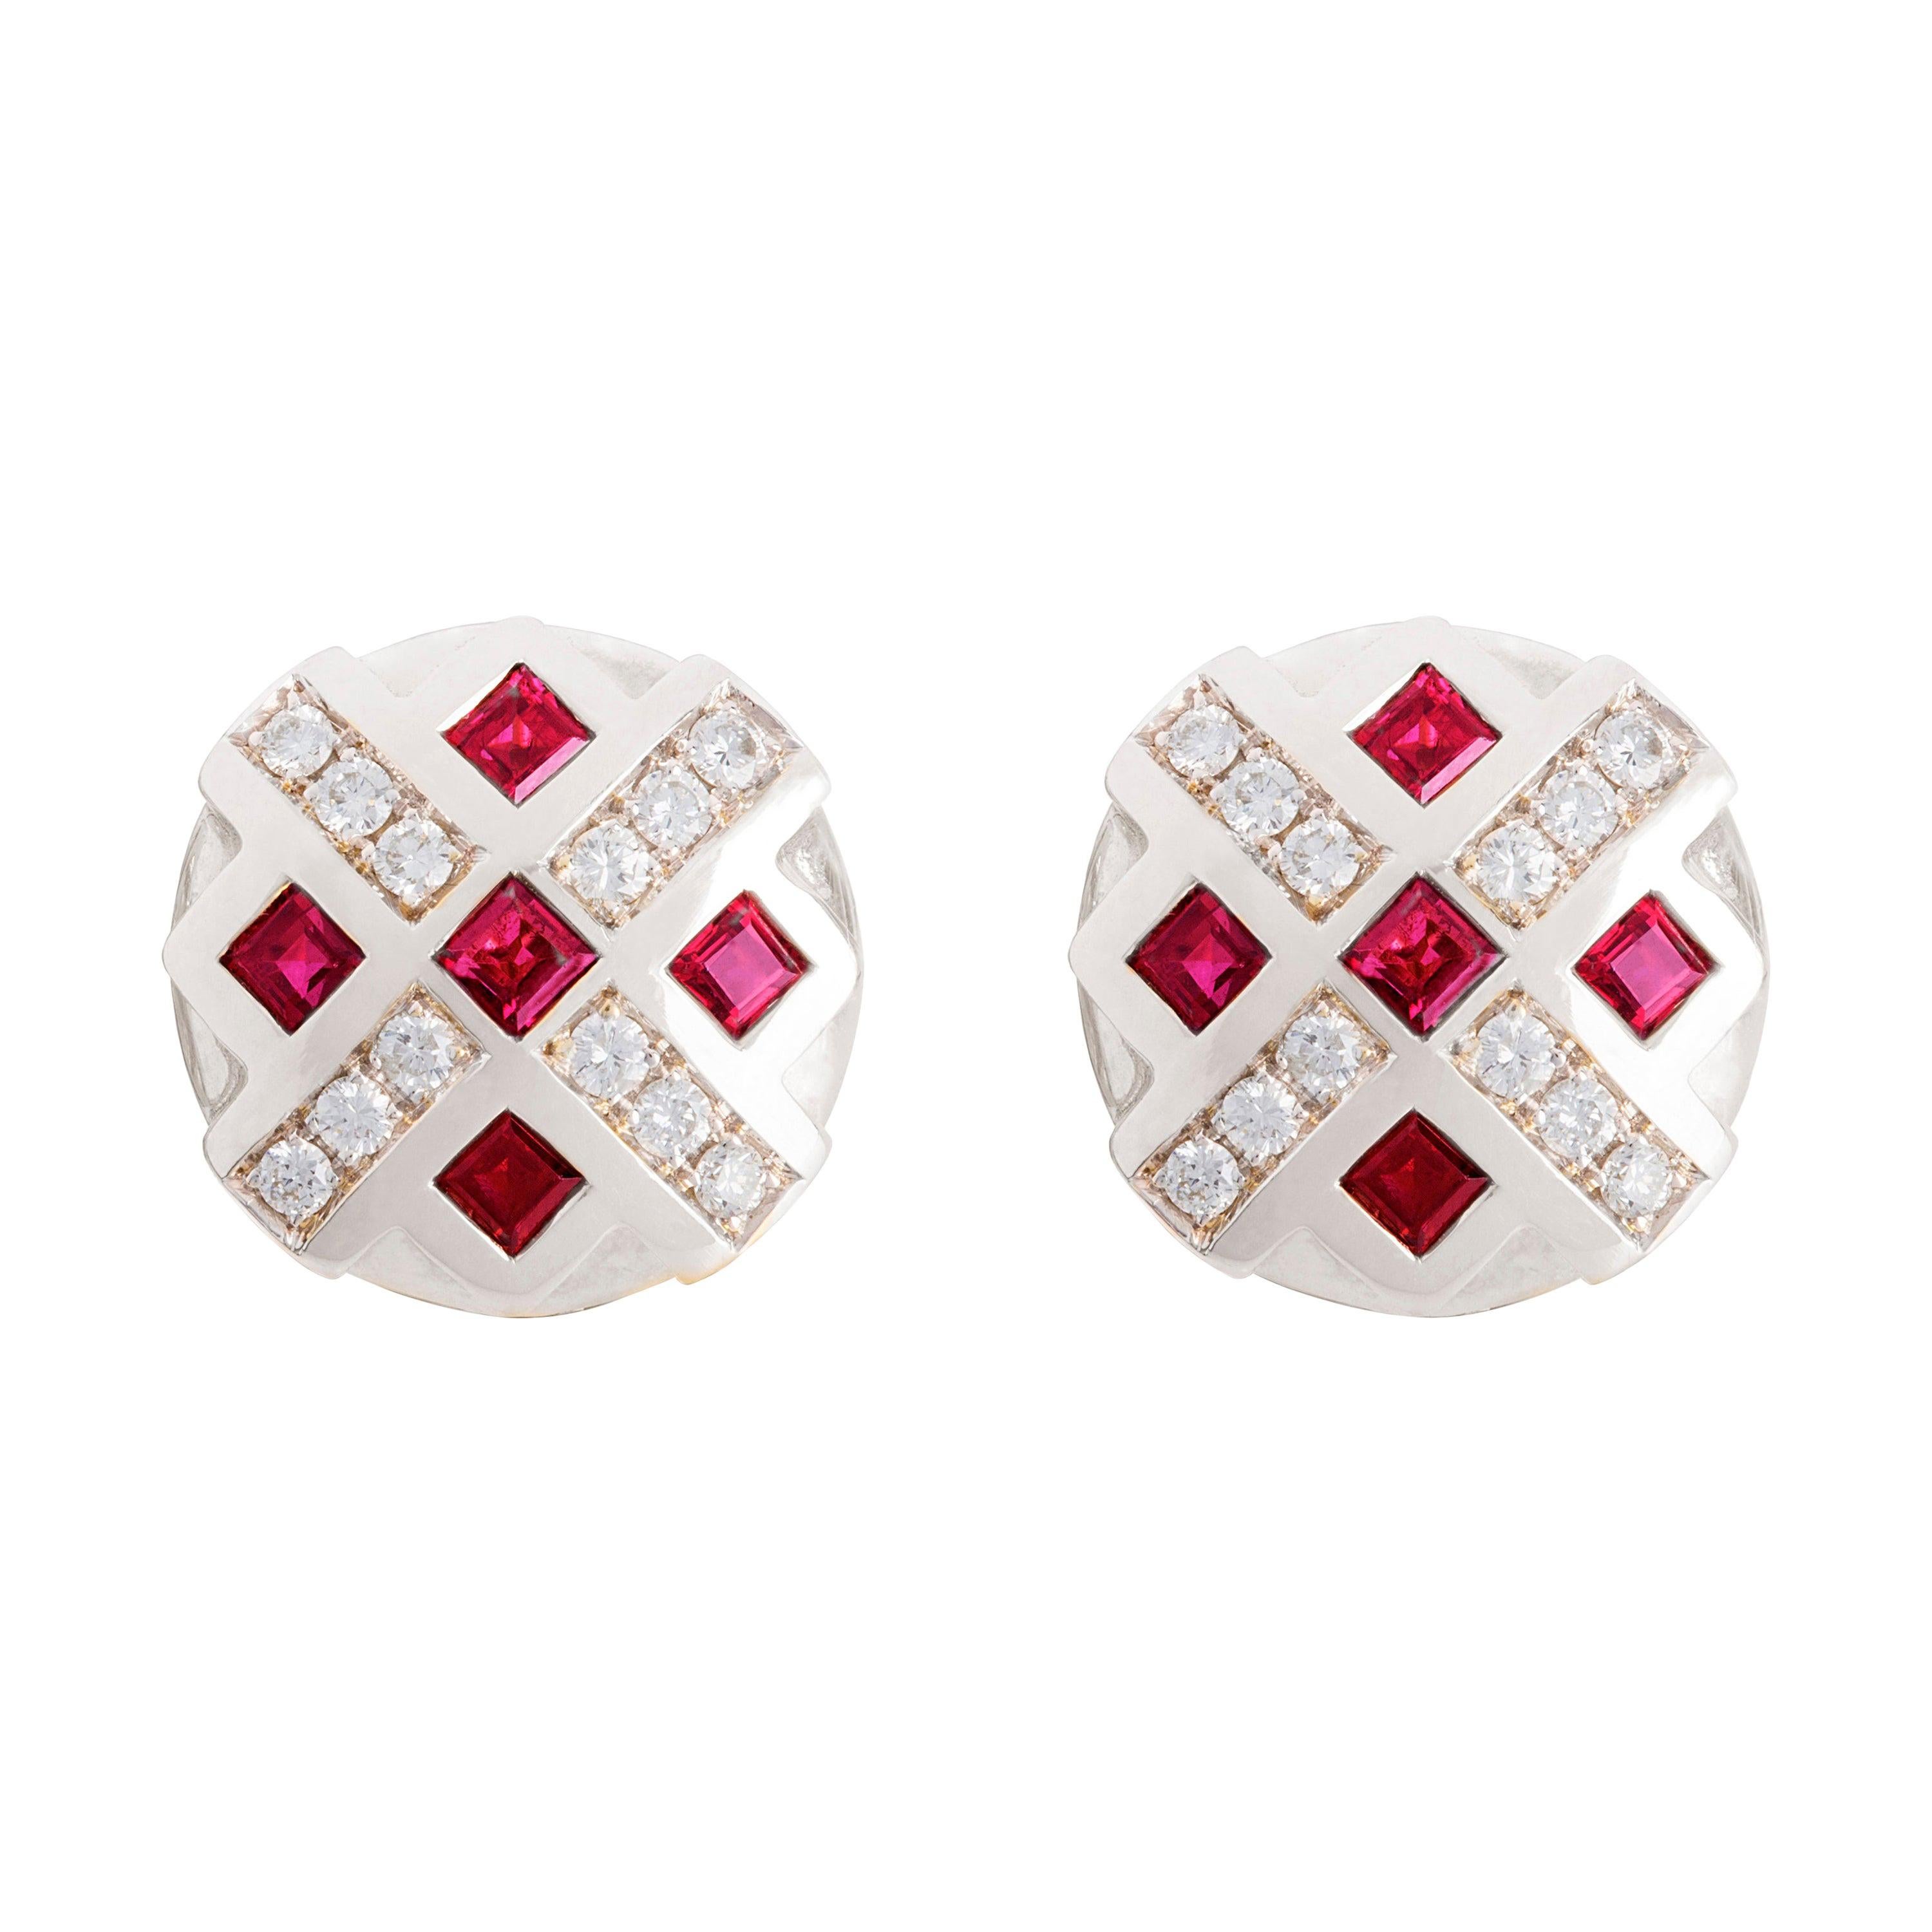 1 Karat Ruby 18 Karat Gold 0.24 Karat GVS1 White Diamonds Chess Clip-On Earrings For Sale